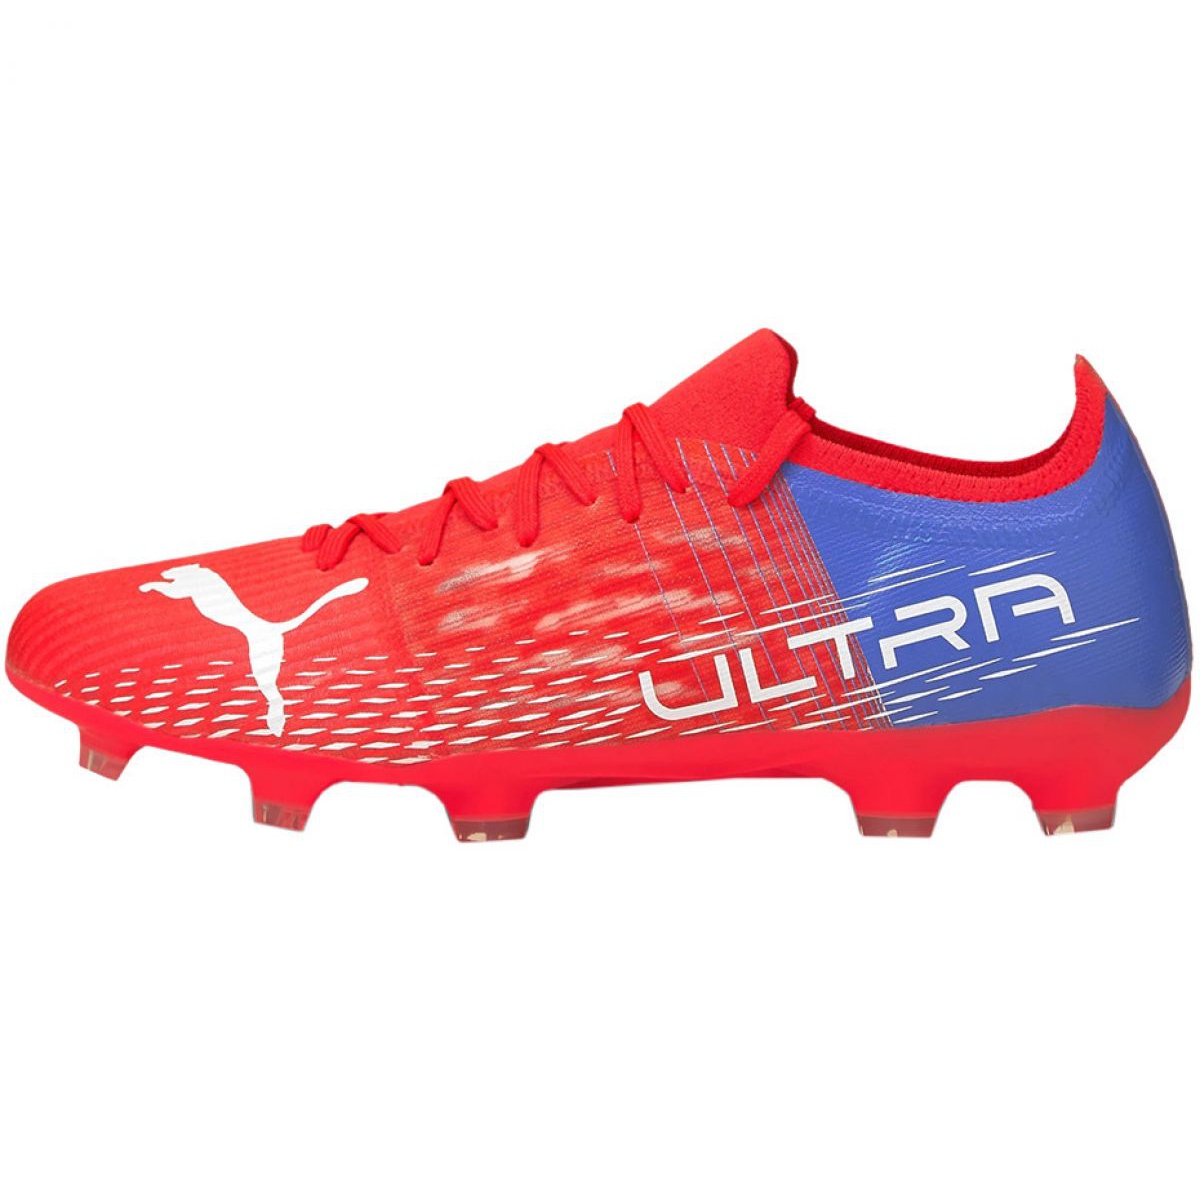 Buty piłkarskie Puma Ultra 3.3 Fg Ag M 106523 01 czerwone czerwone